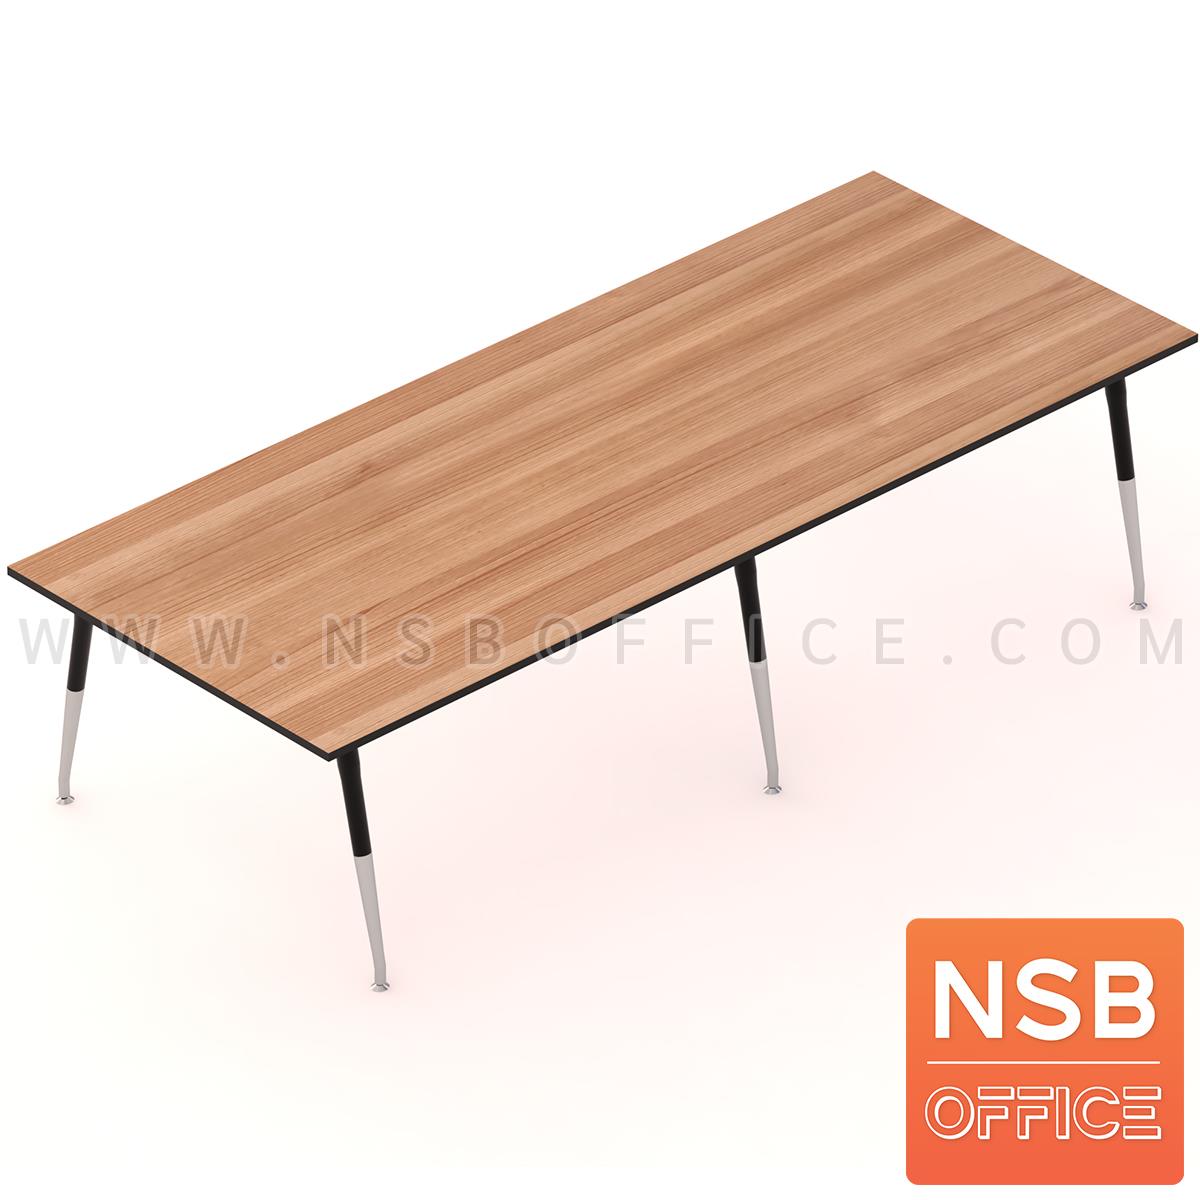 A05A089:โต๊ะประชุมทรงสี่เหลี่ยมยาว  300W-460W (120D, 150D) cm.  ขาเหล็กปลายเรียว